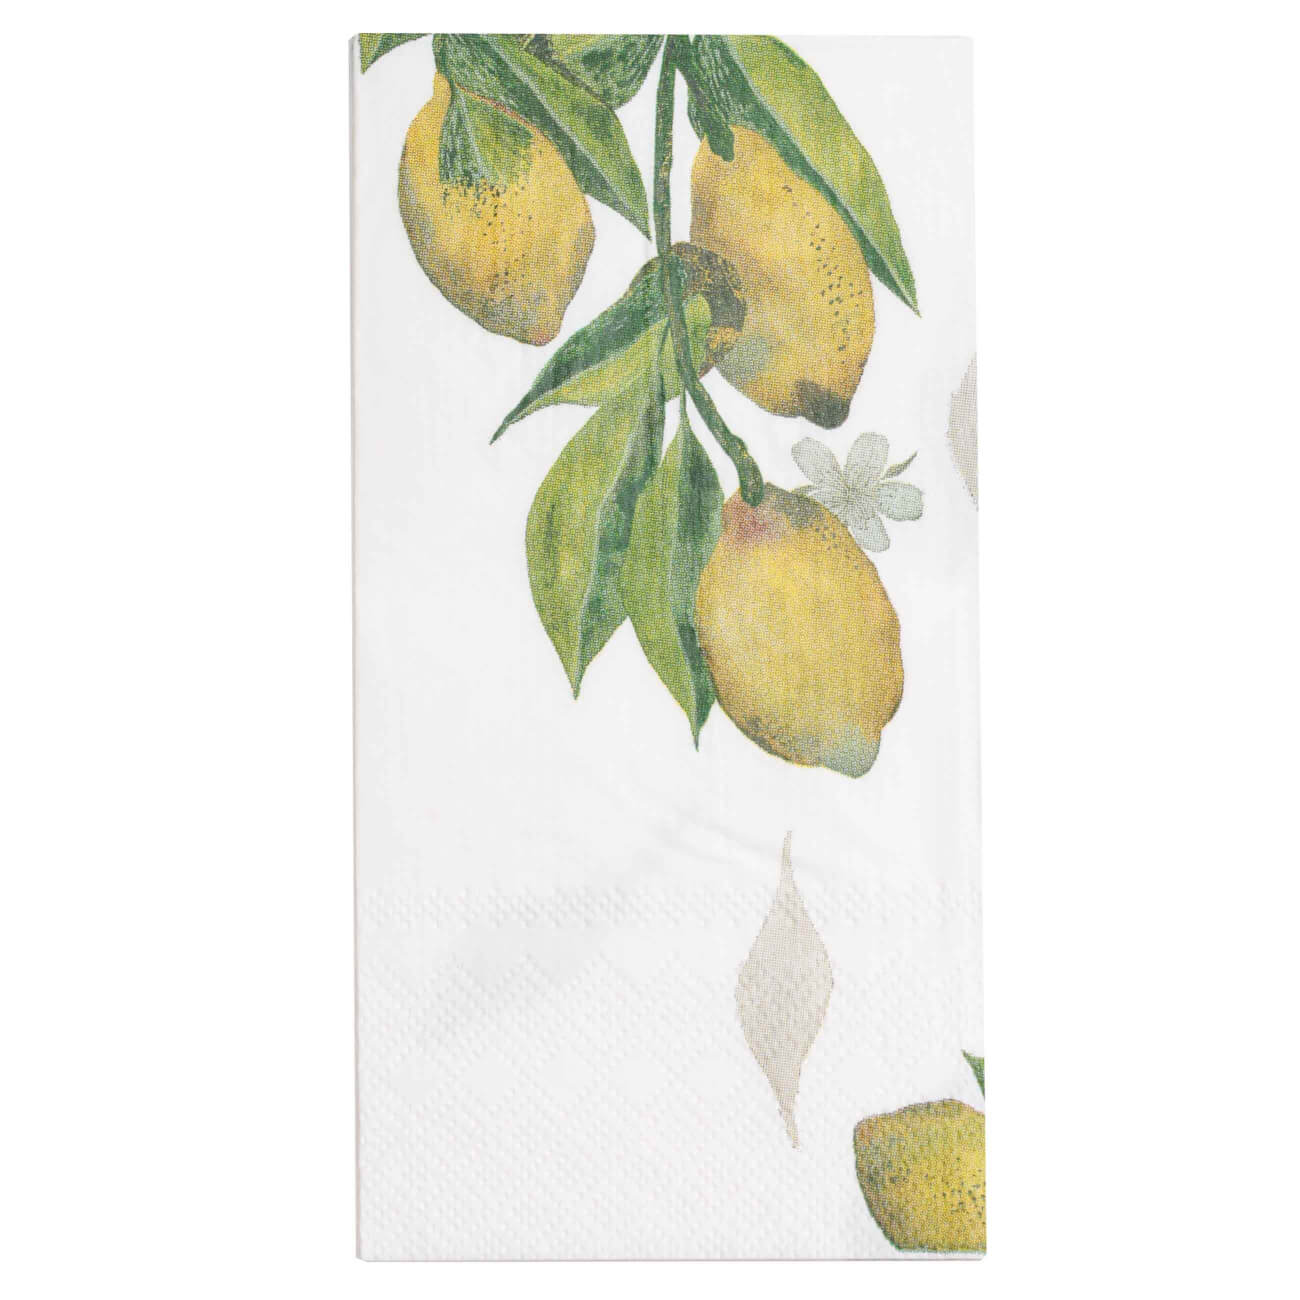 Салфетки бумажные, 33х33 см, 20 шт, прямоугольные, белые, Лимоны на ветке, Sicily in bloom салфетки бумажные 33х33 см 20 шт прямоугольные белые серебристый мрамор maniera